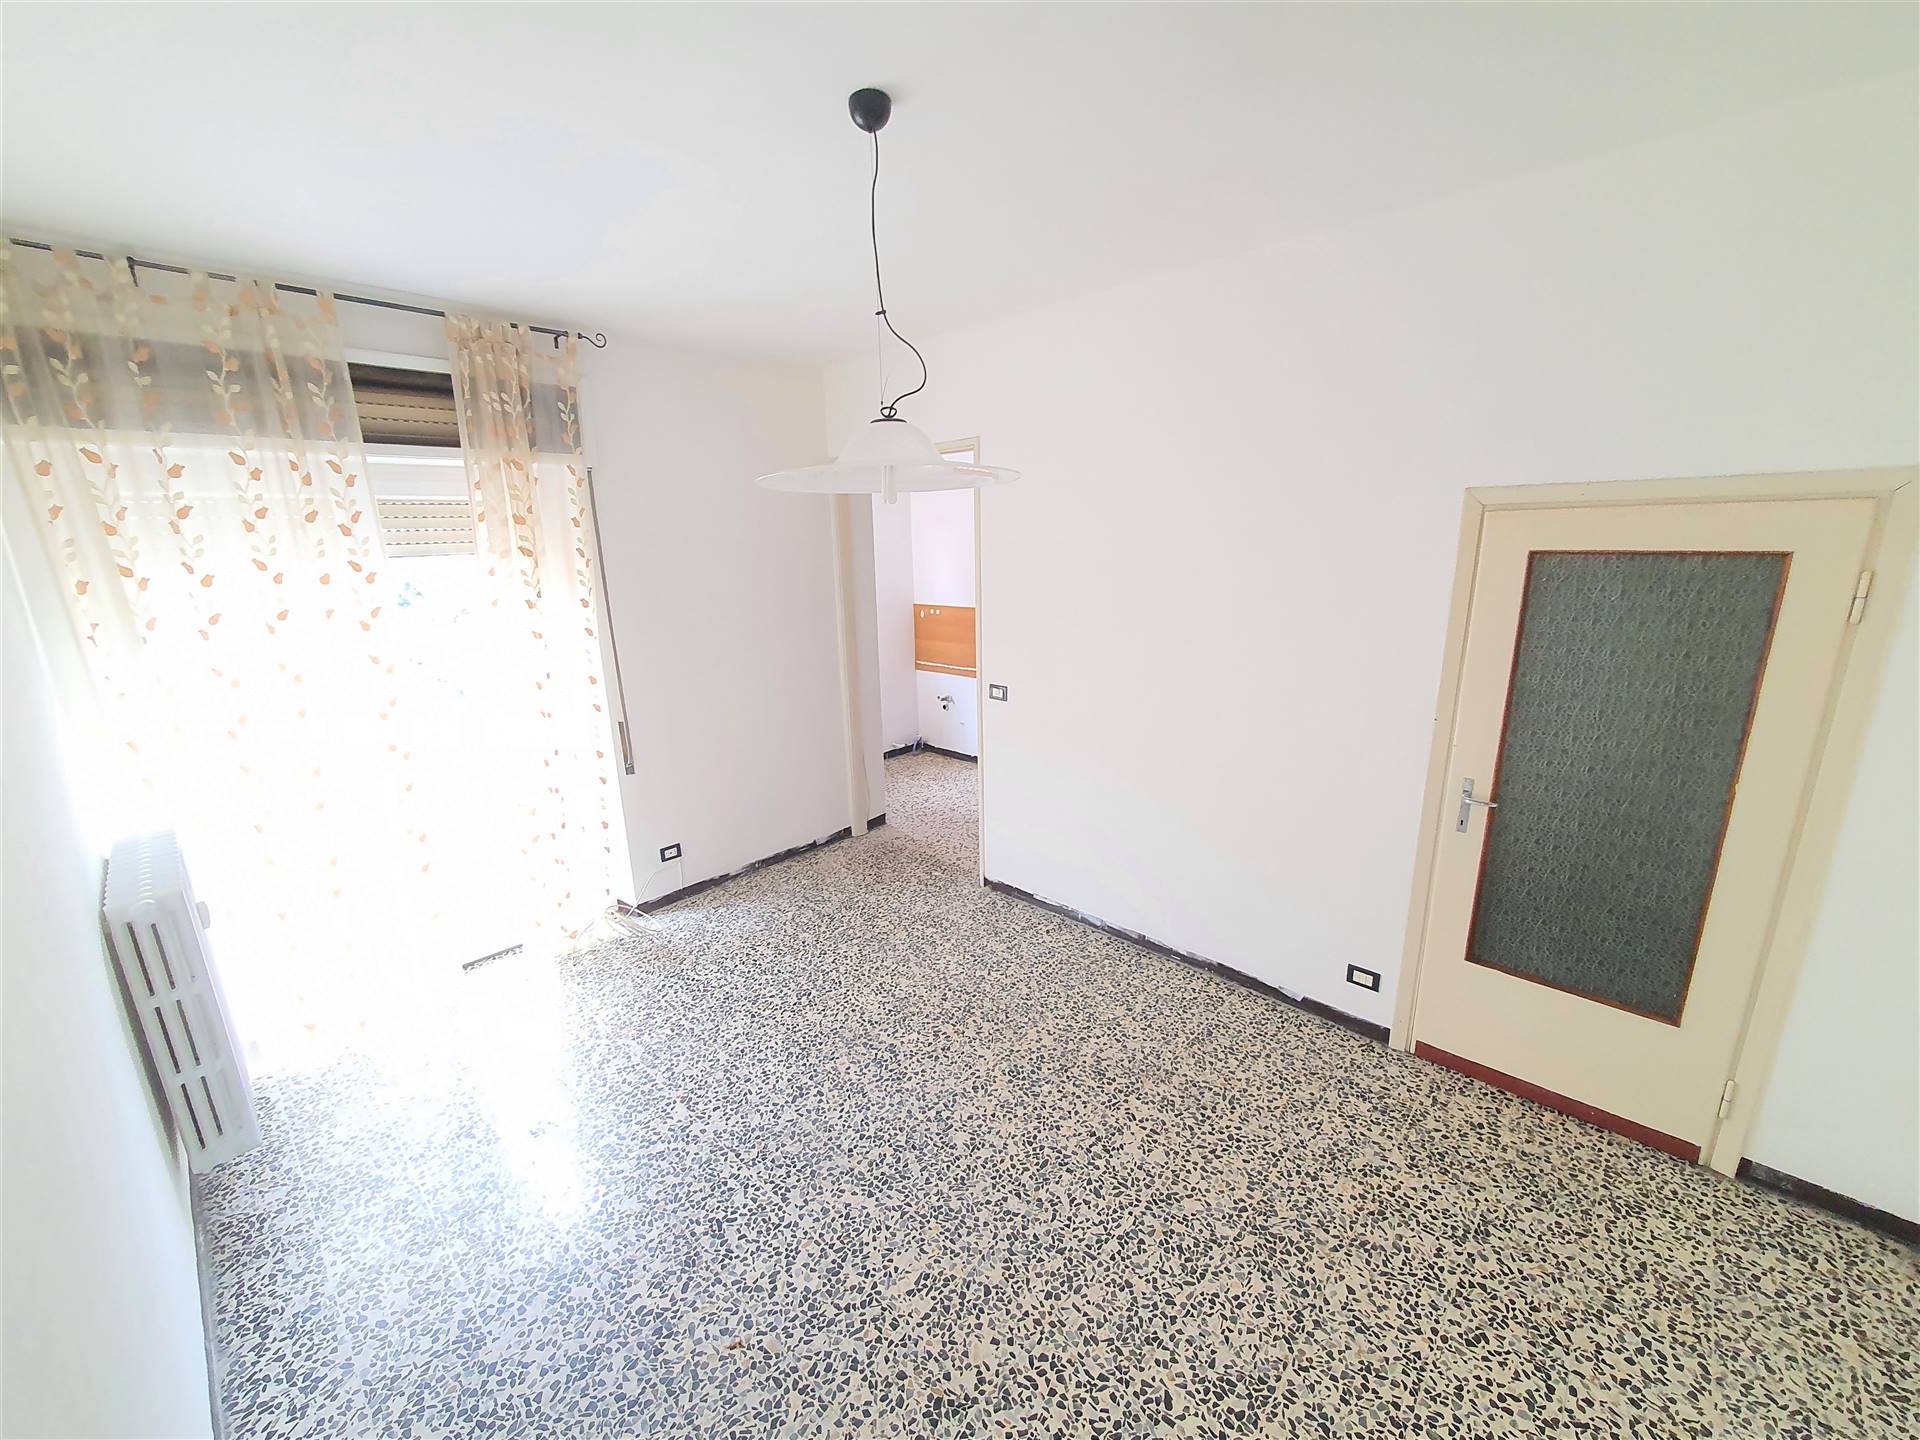 Appartamento in vendita a Calolziocorte, 2 locali, zona lzio centro, prezzo € 65.000 | PortaleAgenzieImmobiliari.it